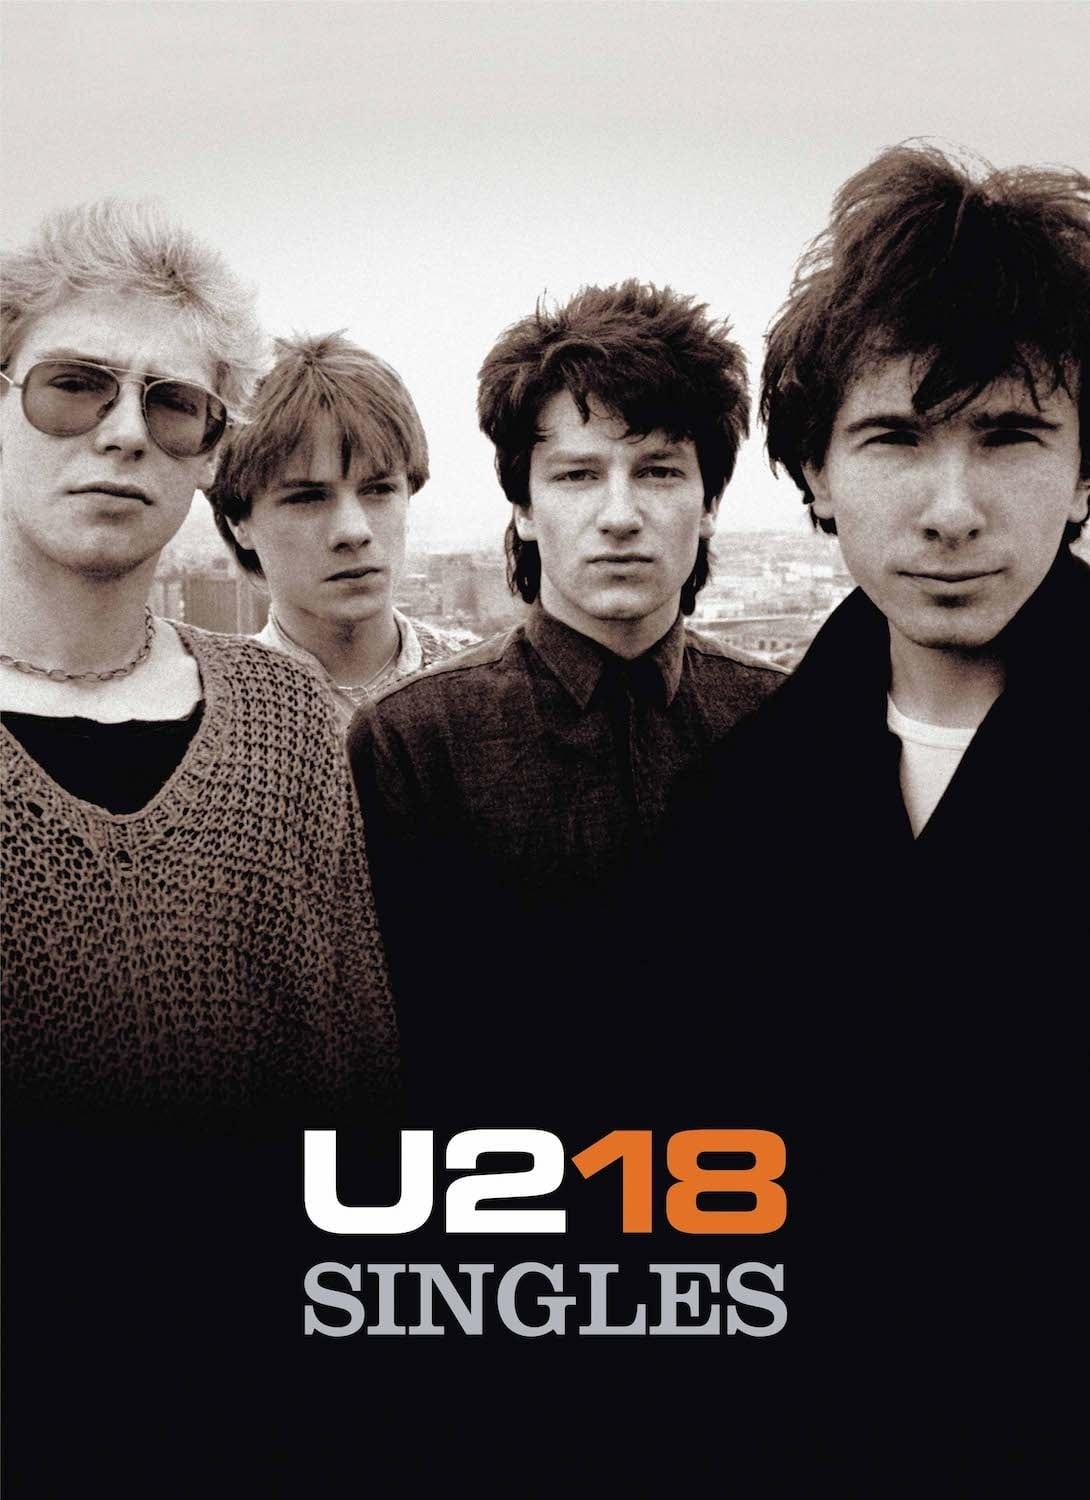 U2: Vertigo 05 - Live from Milan poster